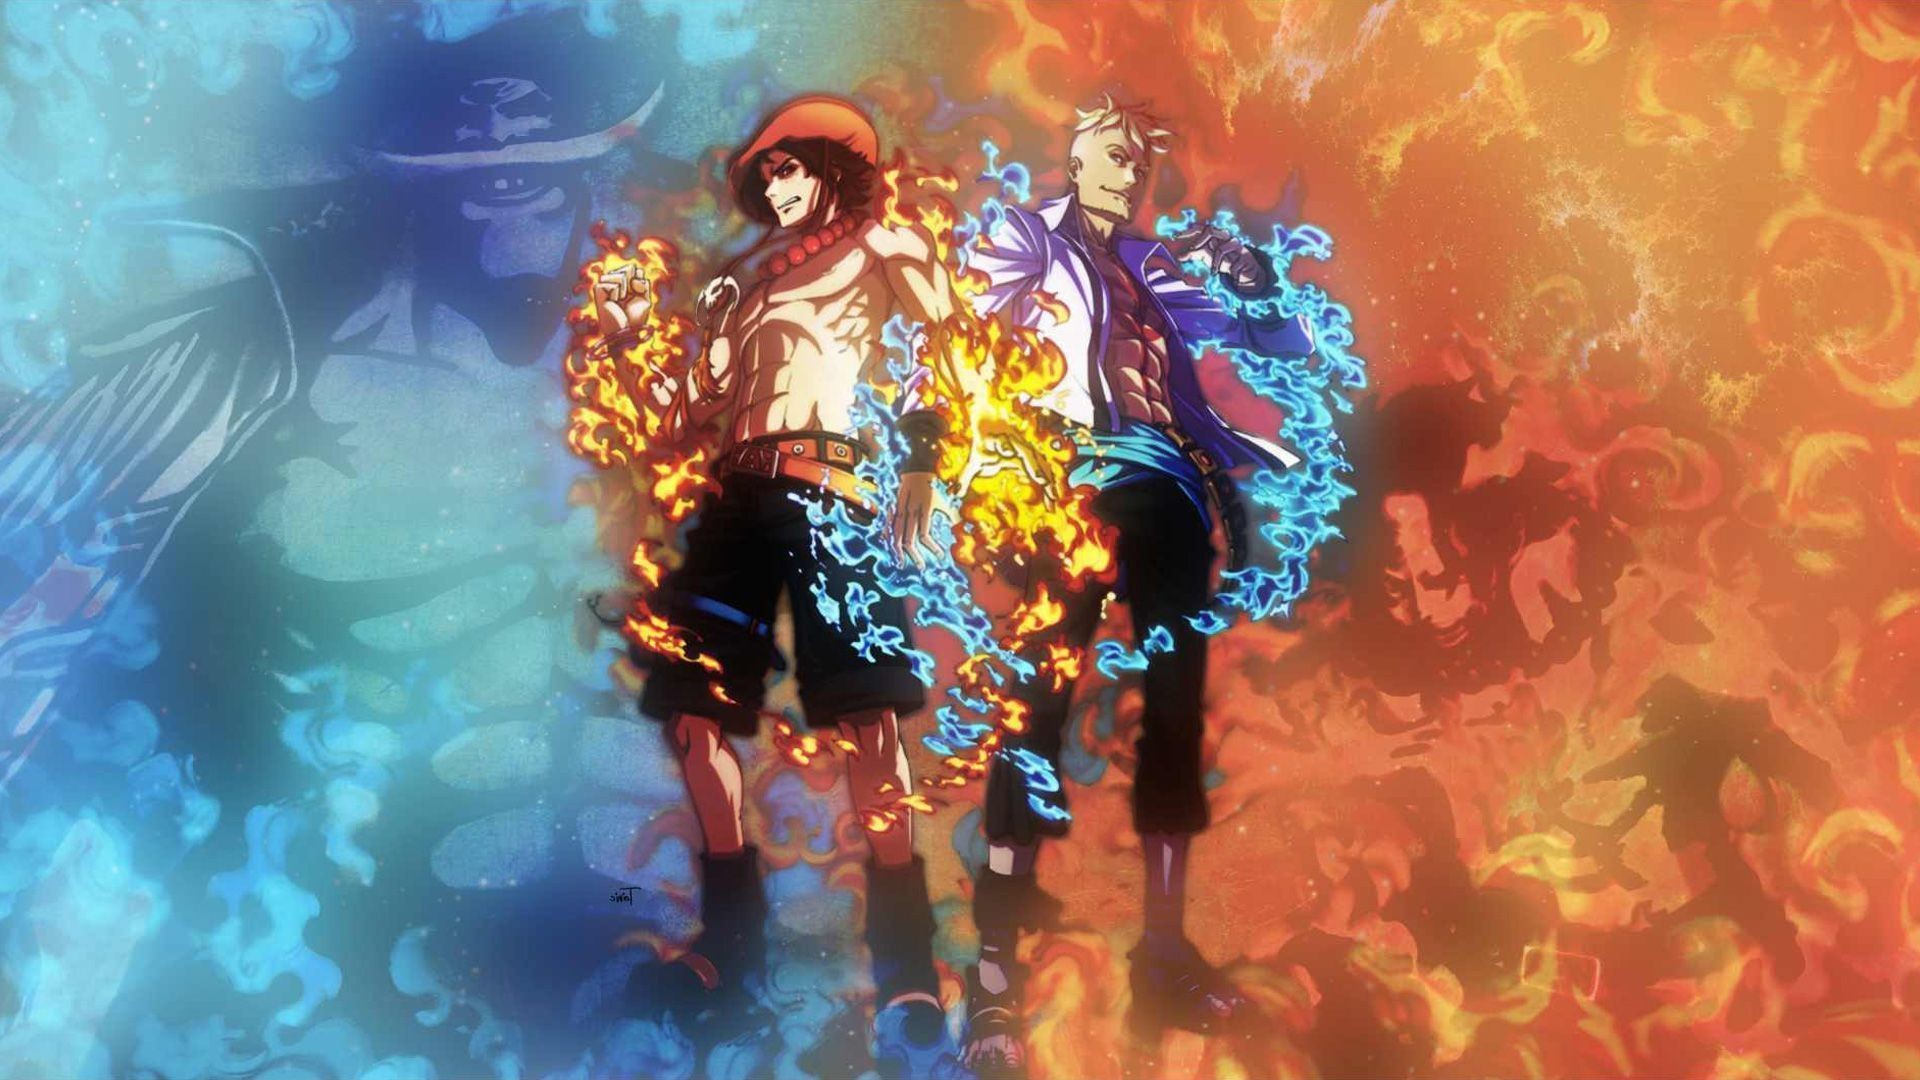 Hãy truy cập để khám phá chùm hình nền One Piece mới nhất với sự xuất hiện của Ace, Luffy và Sabo. Các hình ảnh đầy màu sắc và sinh động sẽ mang đến cho bạn những trải nghiệm đầy cảm xúc và kích thích. Hơn nữa, các bức ảnh này cũng giúp bạn trang trí màn hình máy tính của mình một cách ấn tượng và sang trọng.